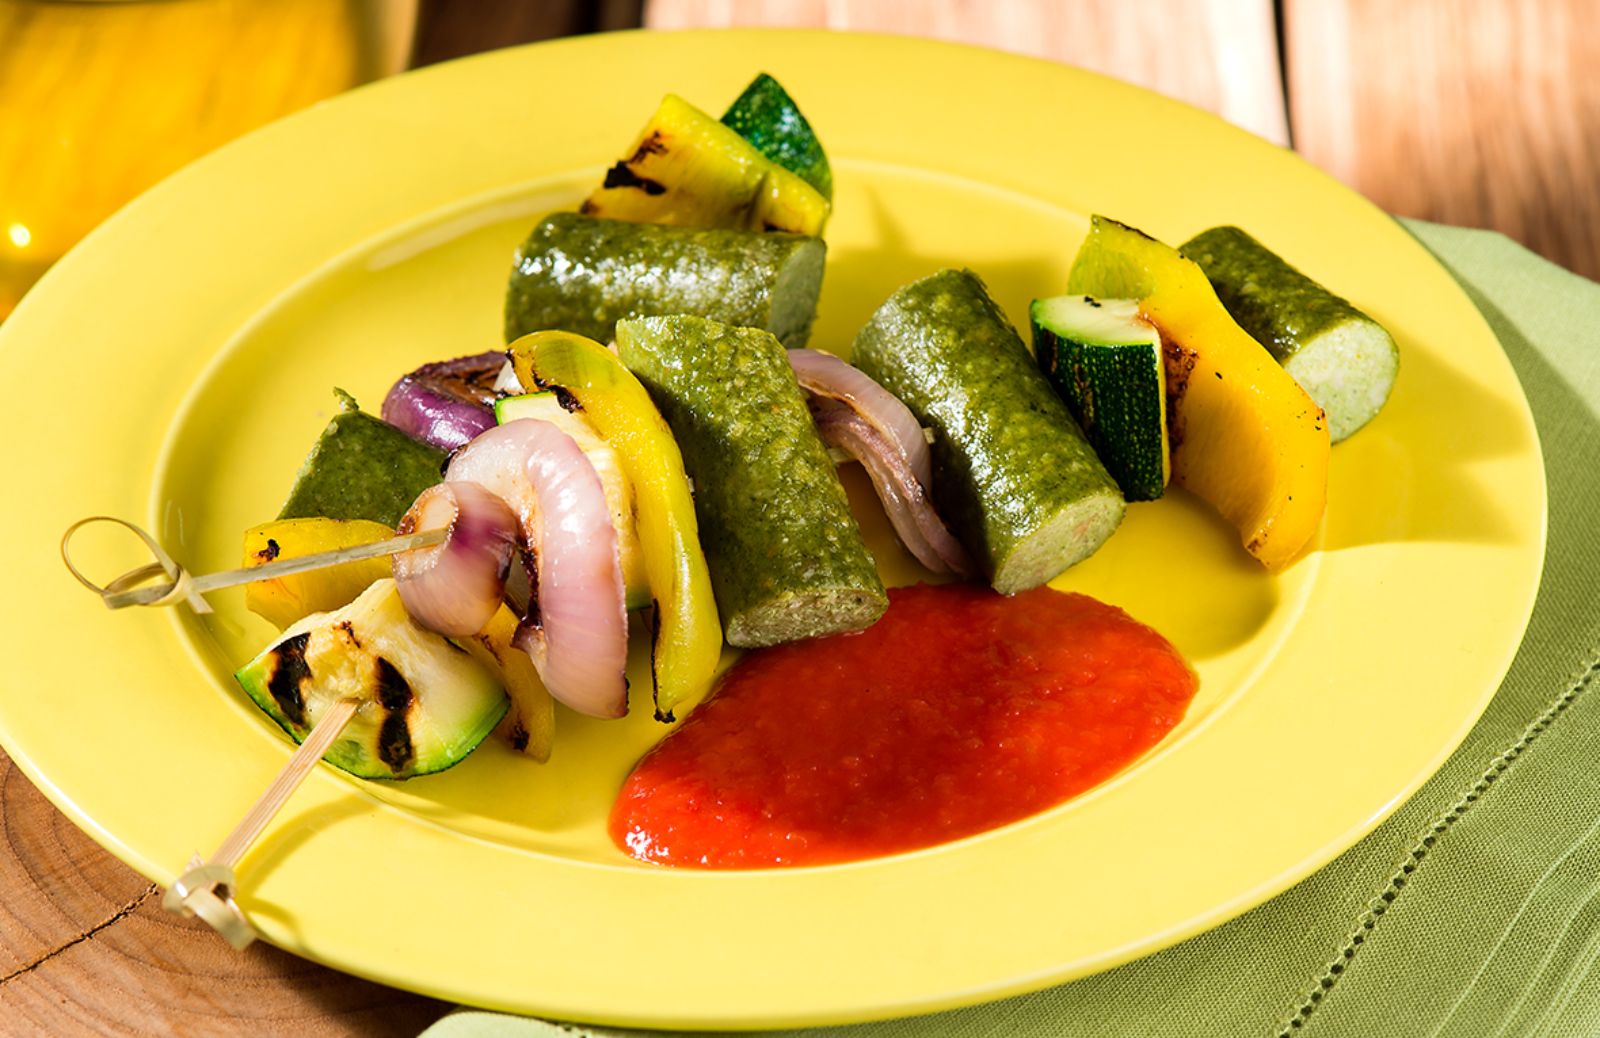 Barbecue vegetariano: spiedini vegetali con würstel di verdure e salsa piccante